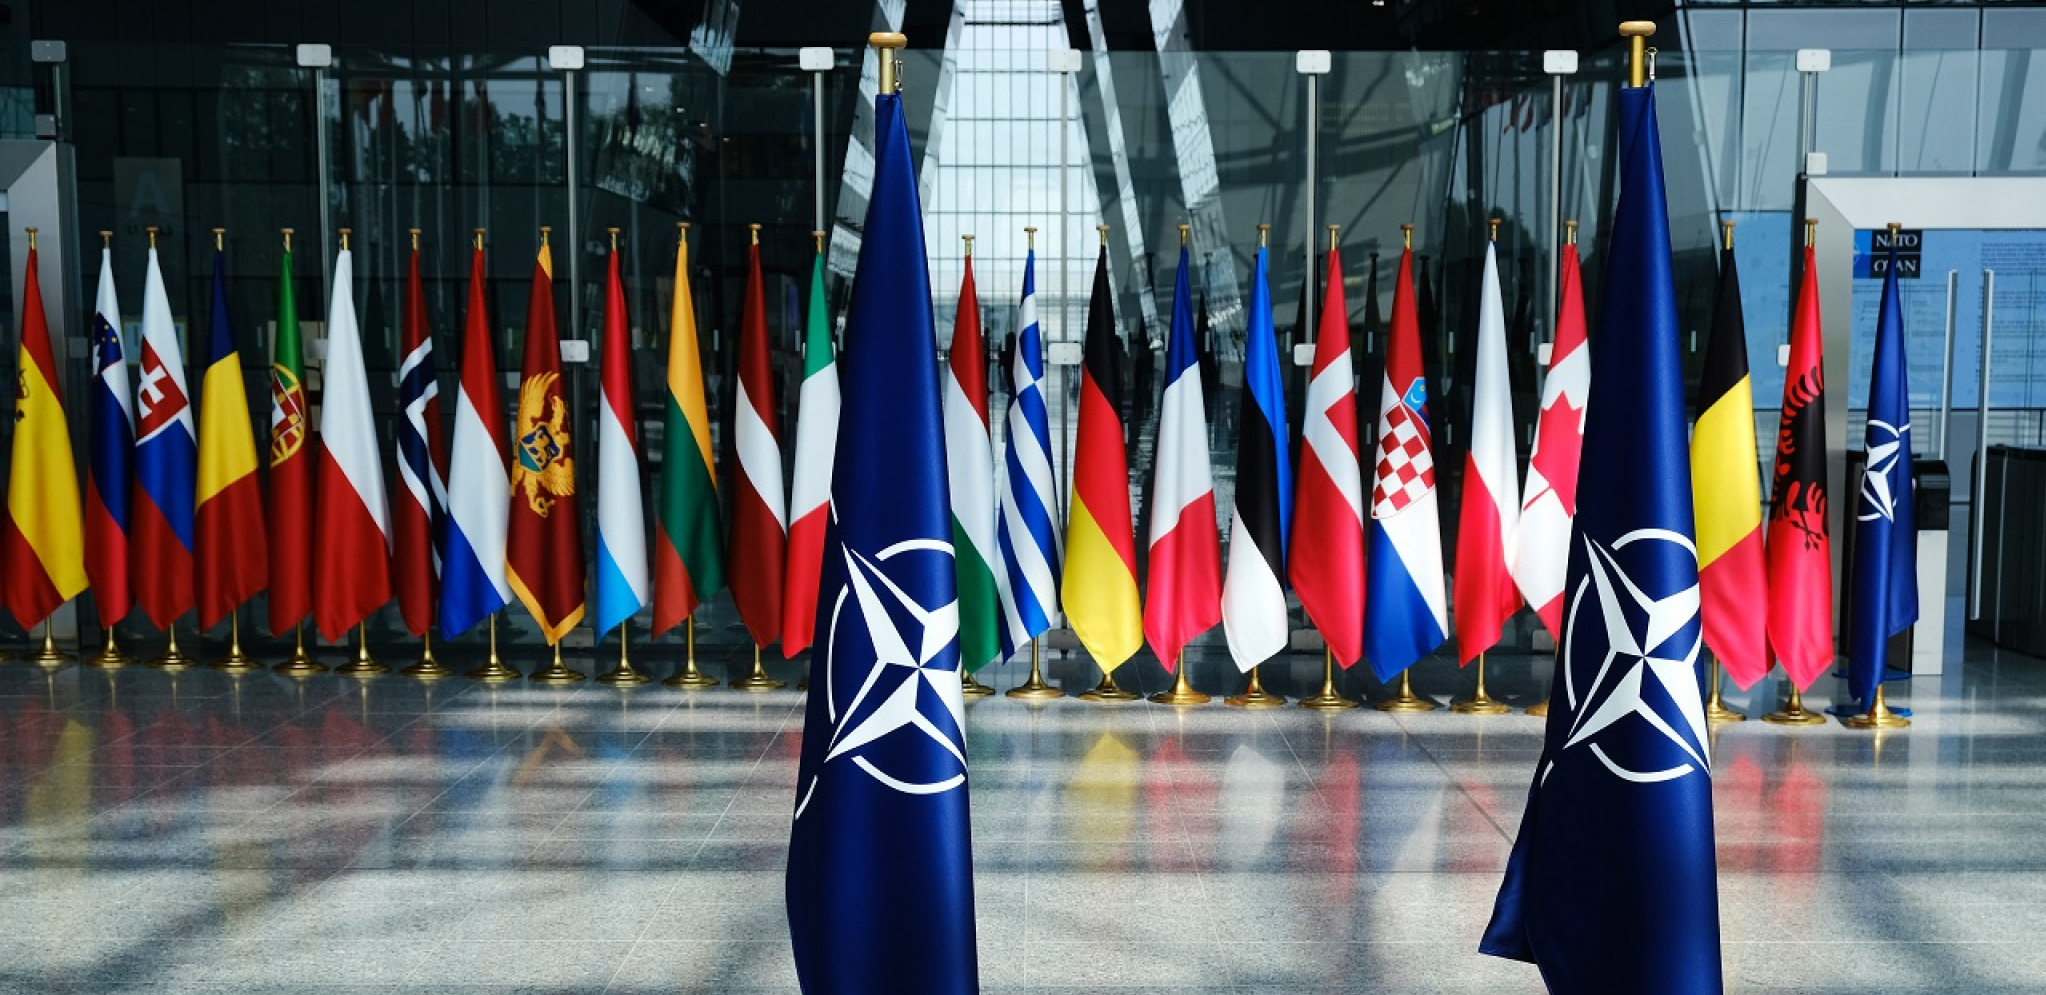 UKRAJINSKA KRIZA POKAZALA SLABOSTI NATO Važne evropske članice kriju se iza saveza, da ne naljute Moskvu